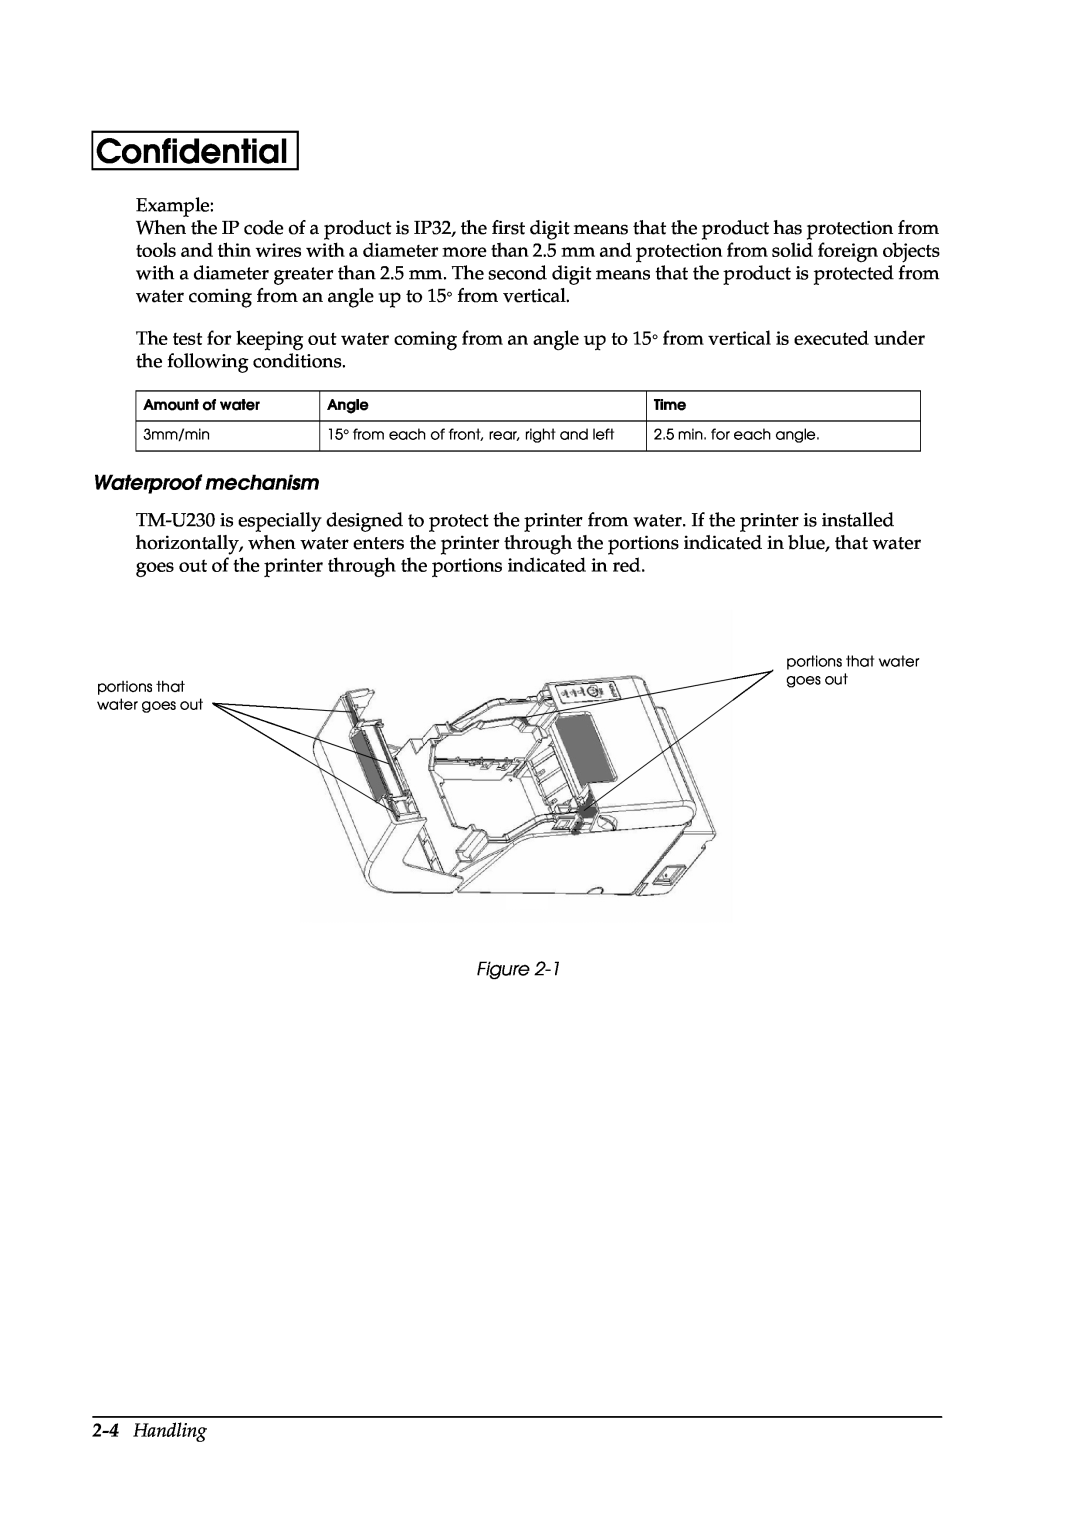 Epson U230 manual Waterproof mechanism, Handling, Confidential 